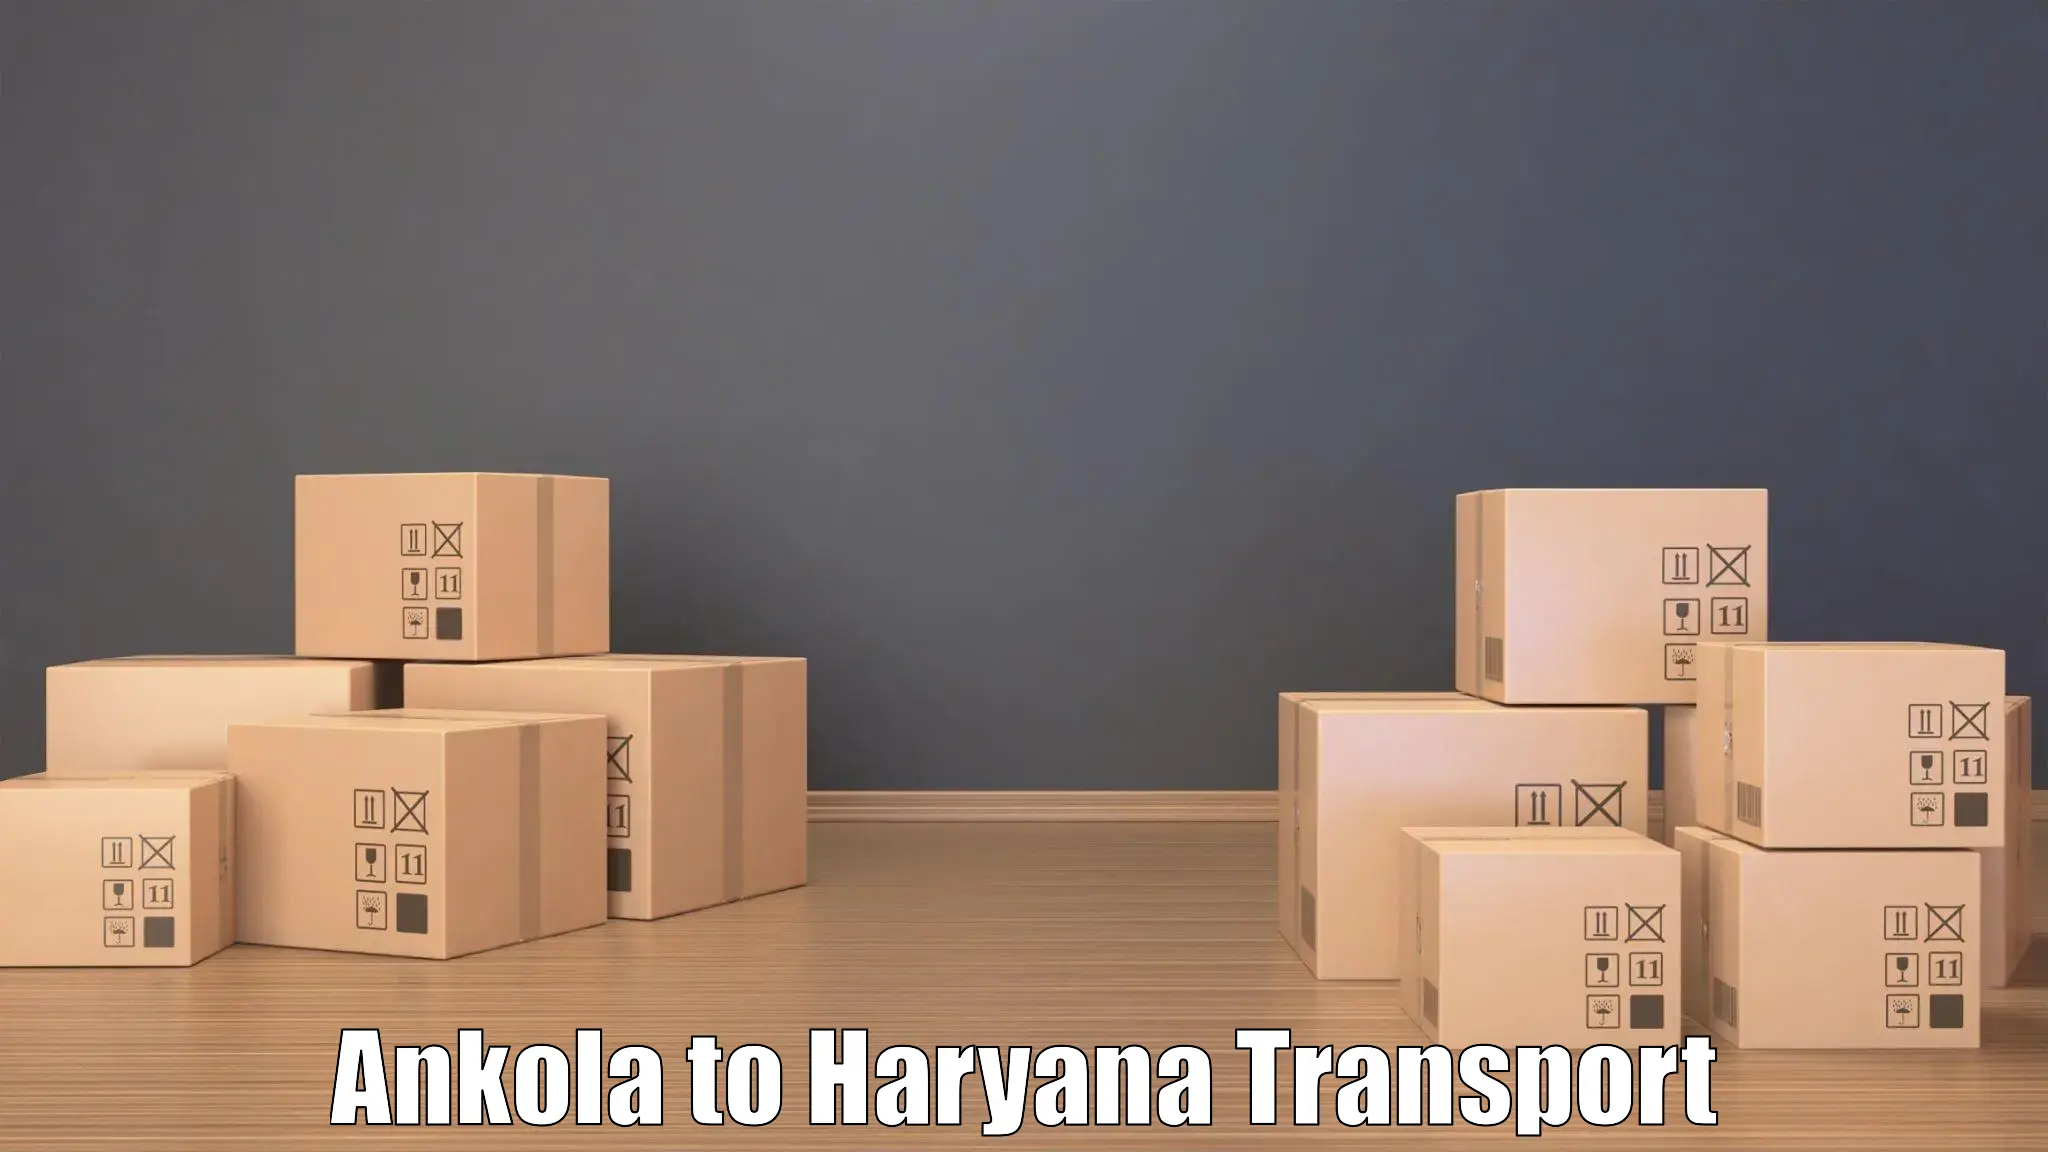 Cargo train transport services Ankola to Gohana